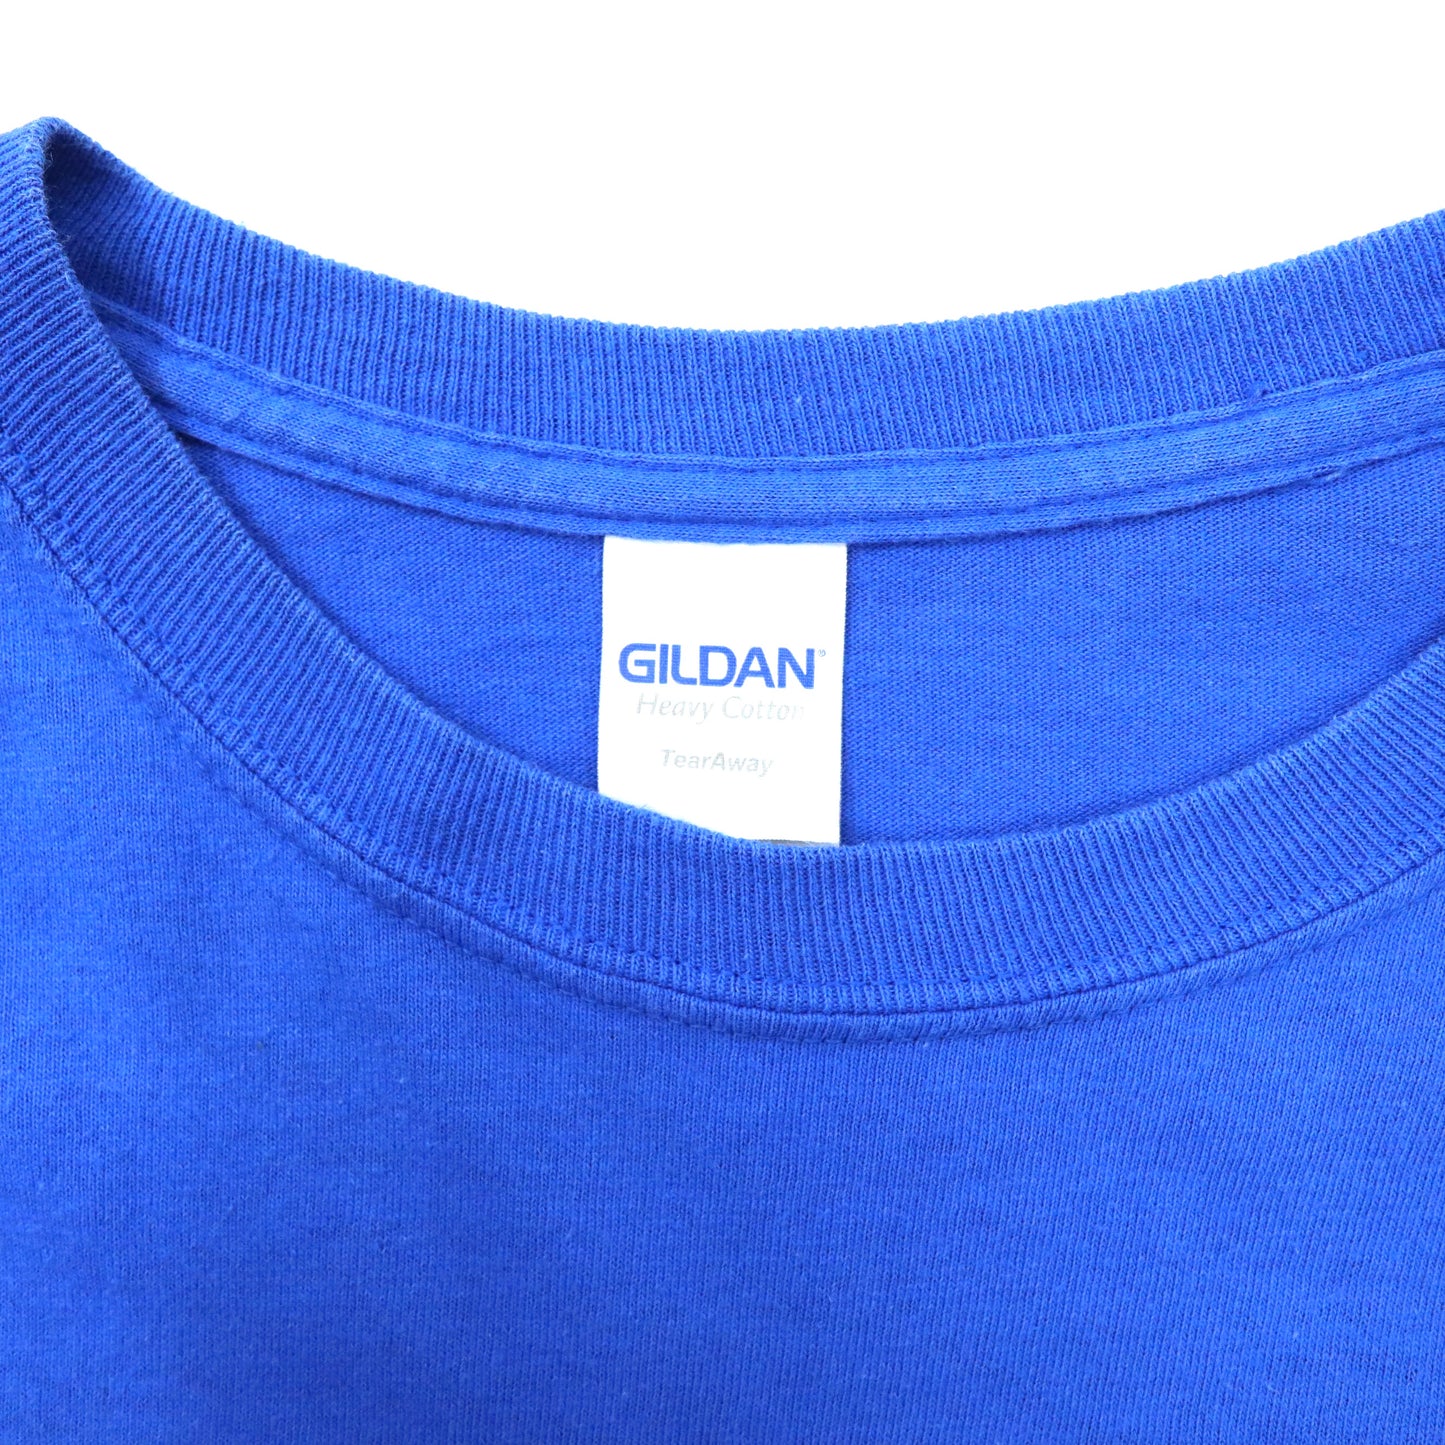 GILDAN ロングスリーブTシャツ M ブルー コットン WHITTIER WOLVERINES ホンジュラス製